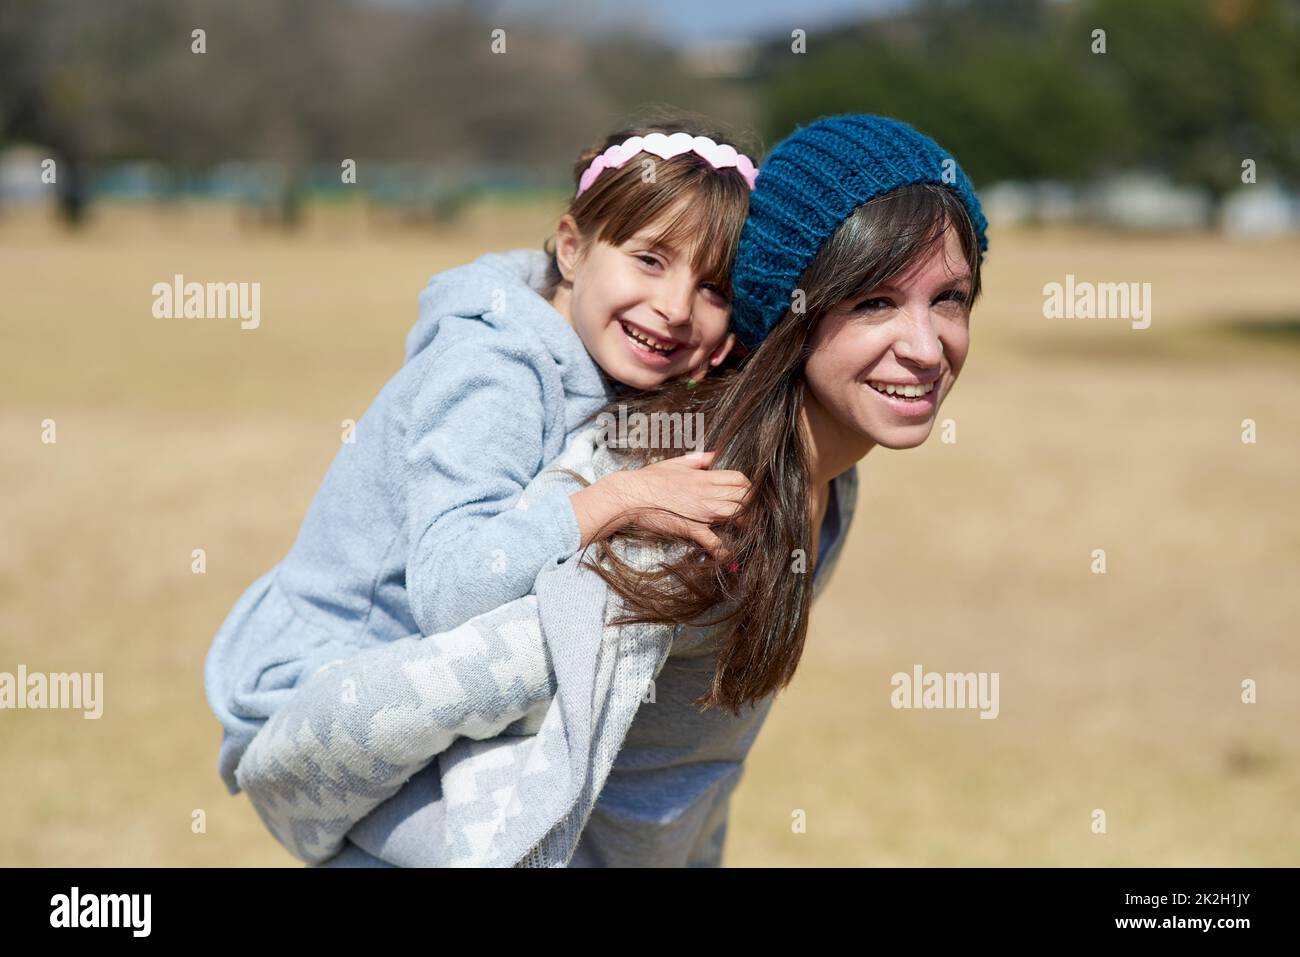 Das Zusammensein ist alles, was zählt. Porträt einer Mutter und Tochter, die sich im Park verbinden. Stockfoto